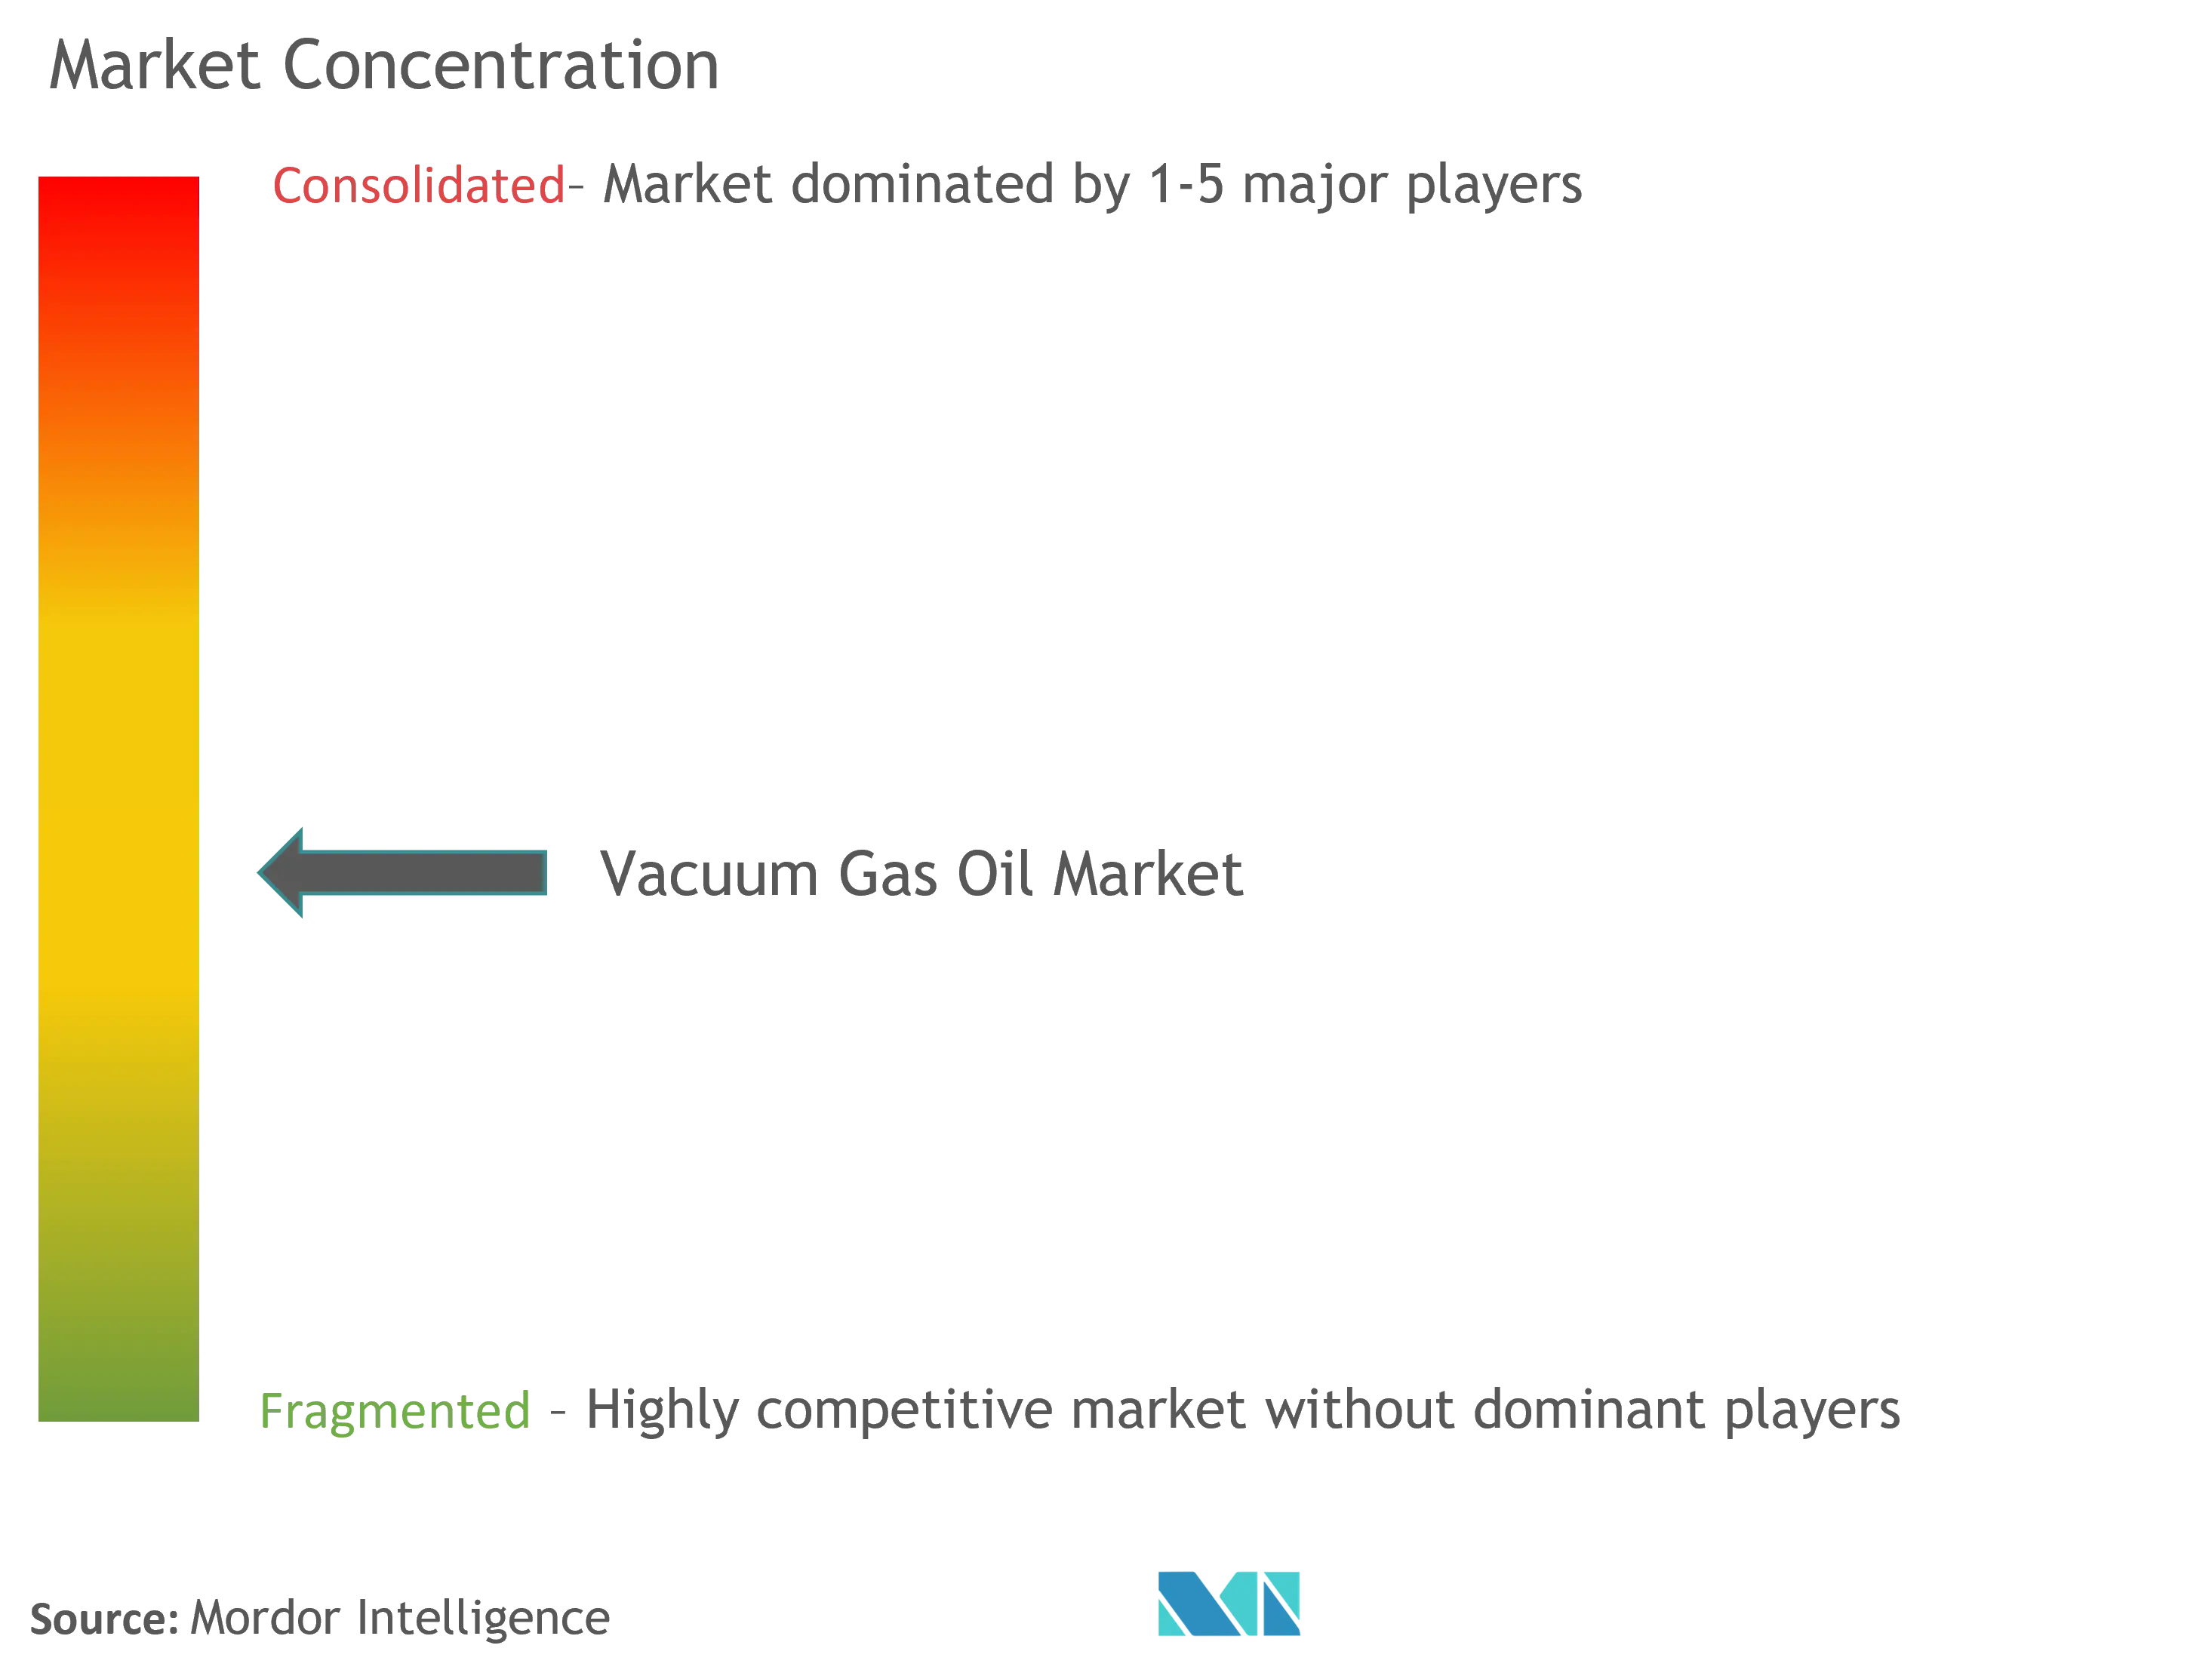 Vacuum Gas Oil Market Concentration